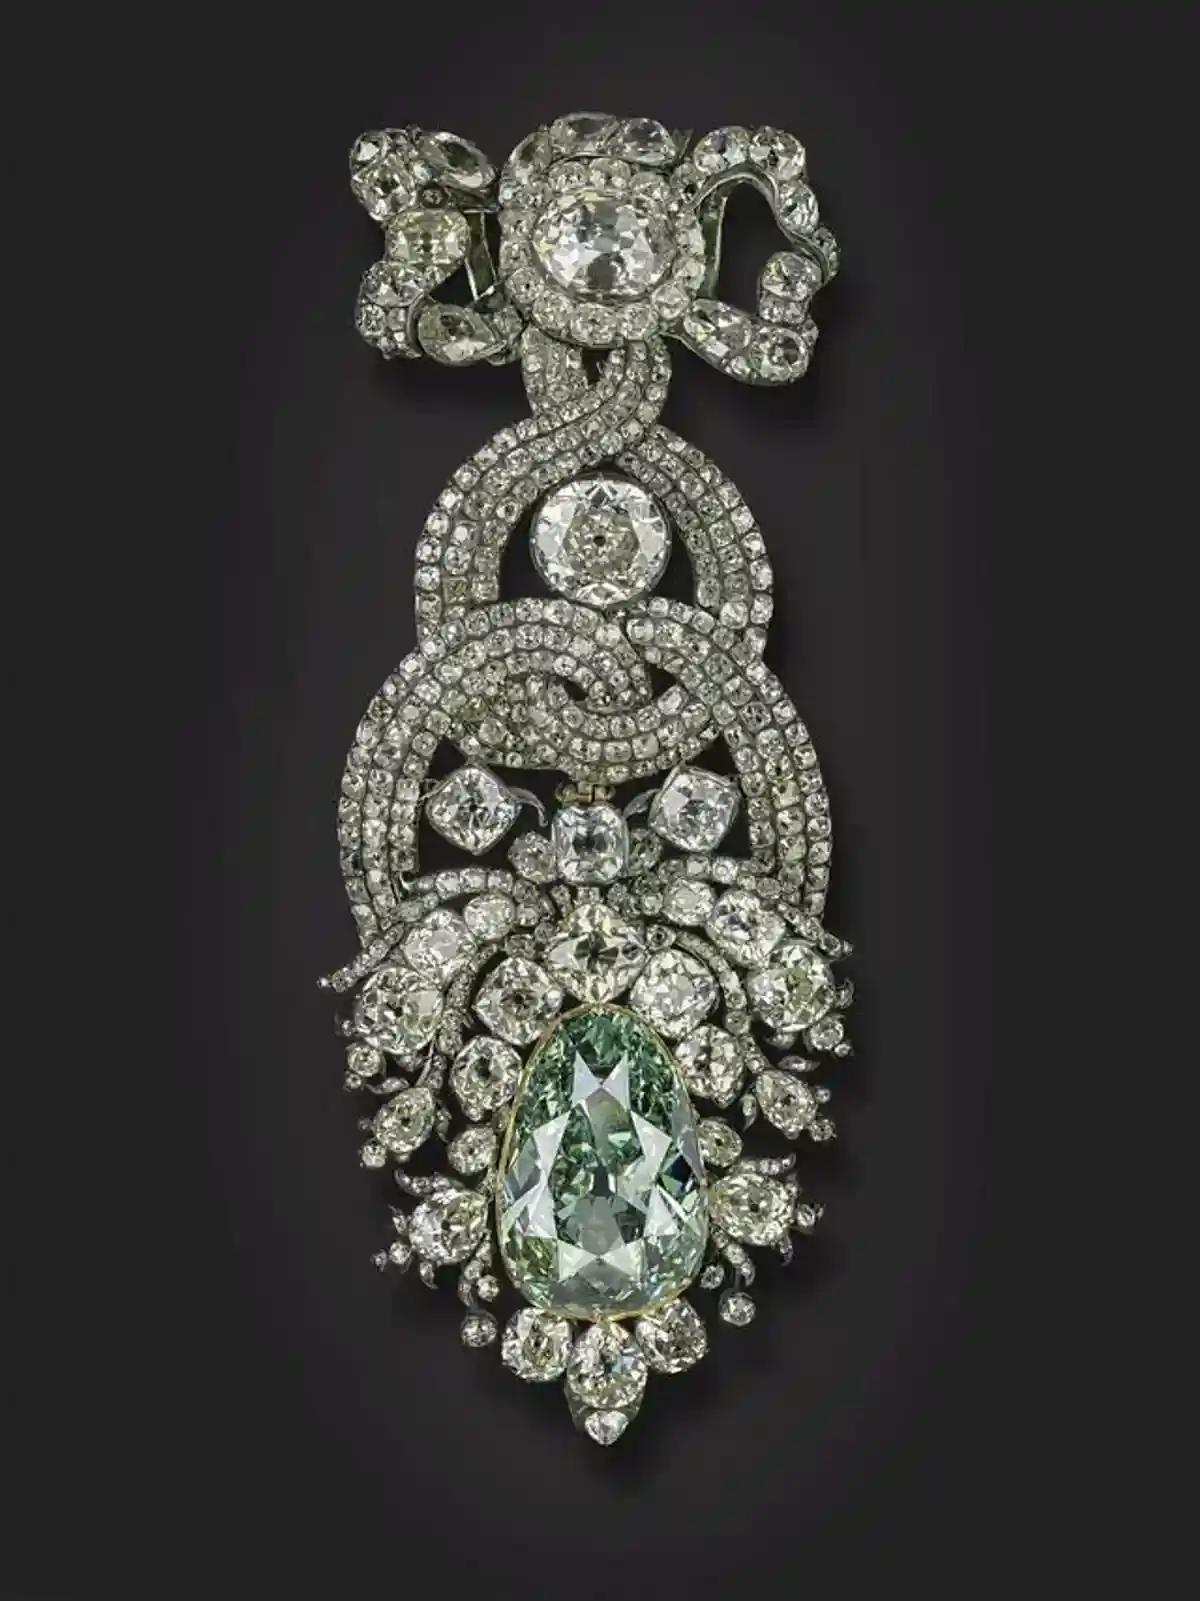 Так выглядит Зелёный бриллиант сейчас - с 18 века внешний вид драгоценности не изменился. Фото: пресс-служба Государственной коллекции искусств Дрездена